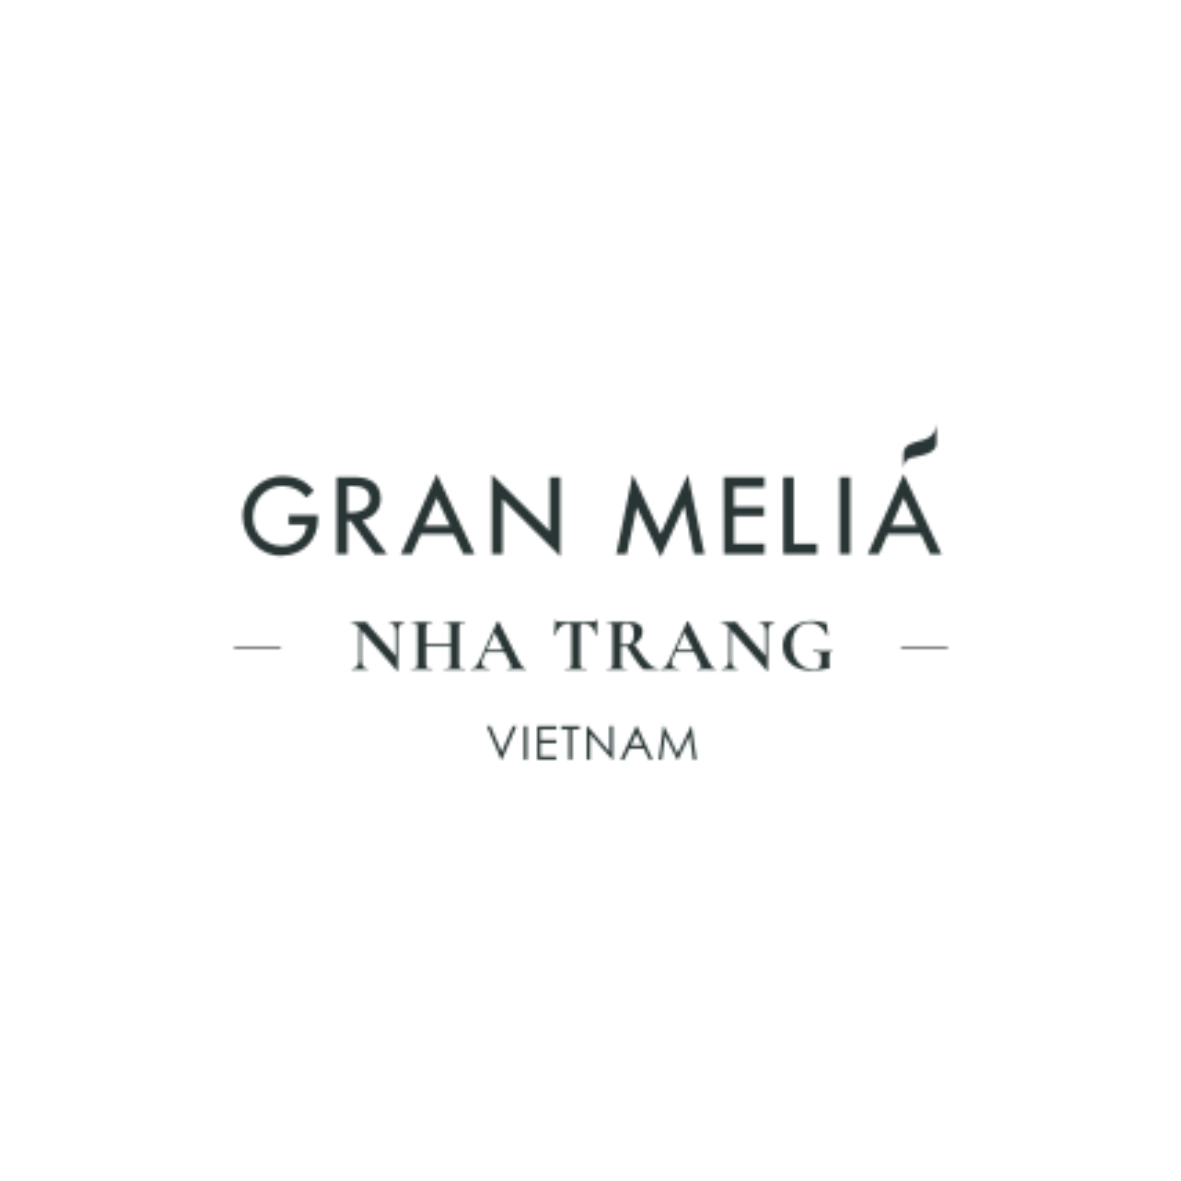 Gran Melia Nha Trang